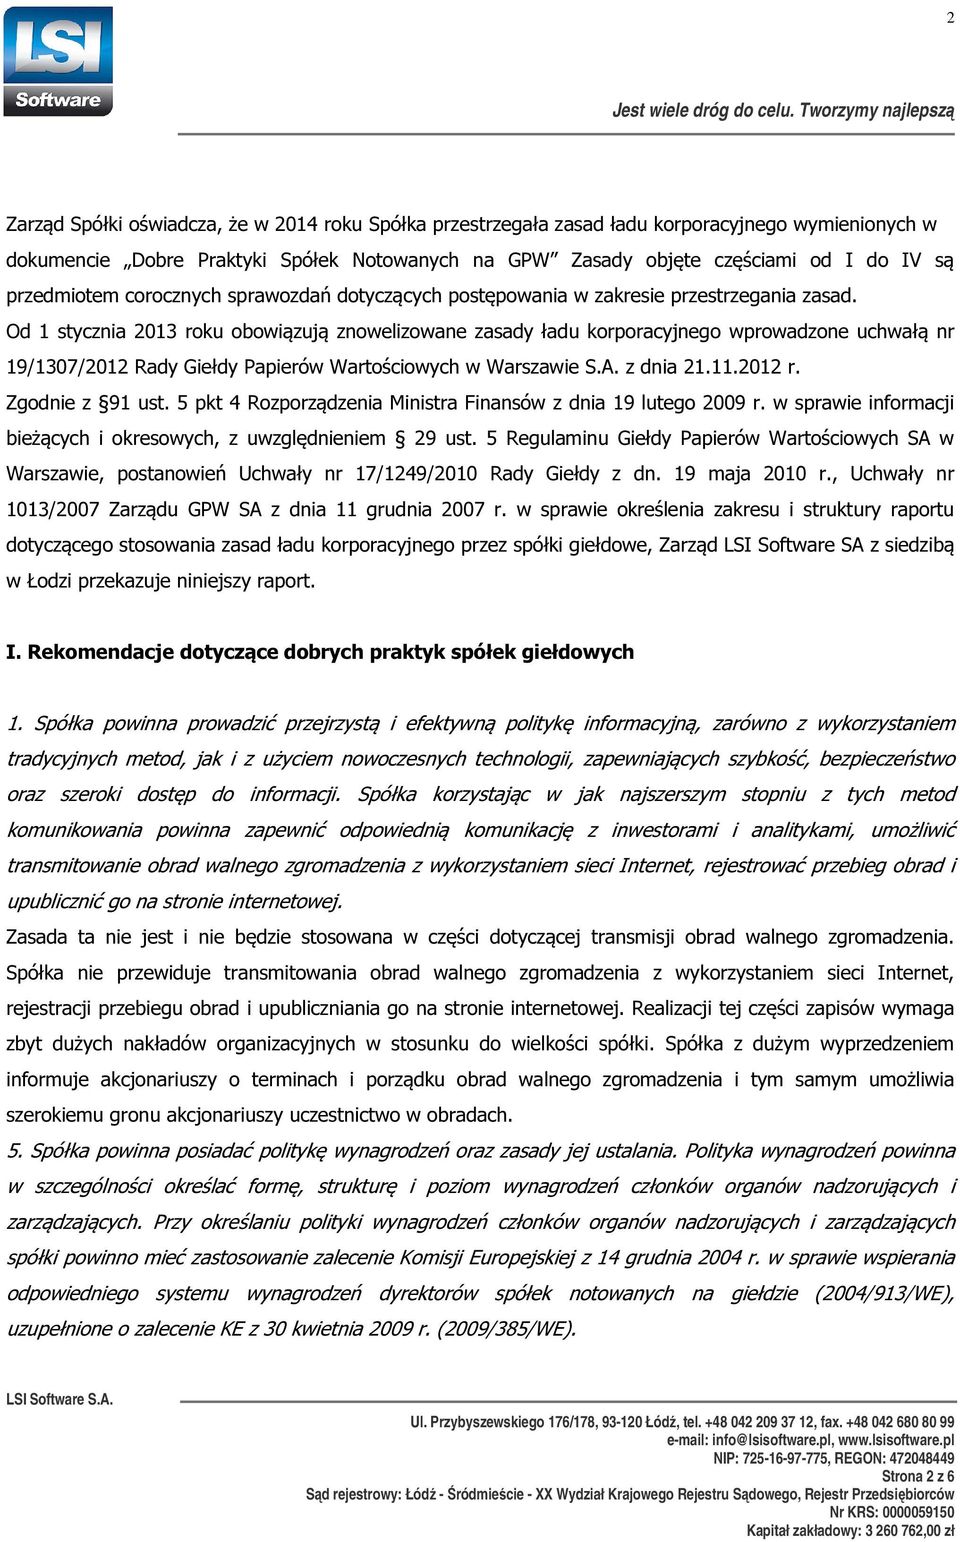 Od 1 stycznia 2013 roku obowiązują znowelizowane zasady ładu korporacyjnego wprowadzone uchwałą nr 19/1307/2012 Rady Giełdy Papierów Wartościowych w Warszawie S.A. z dnia 21.11.2012 r.